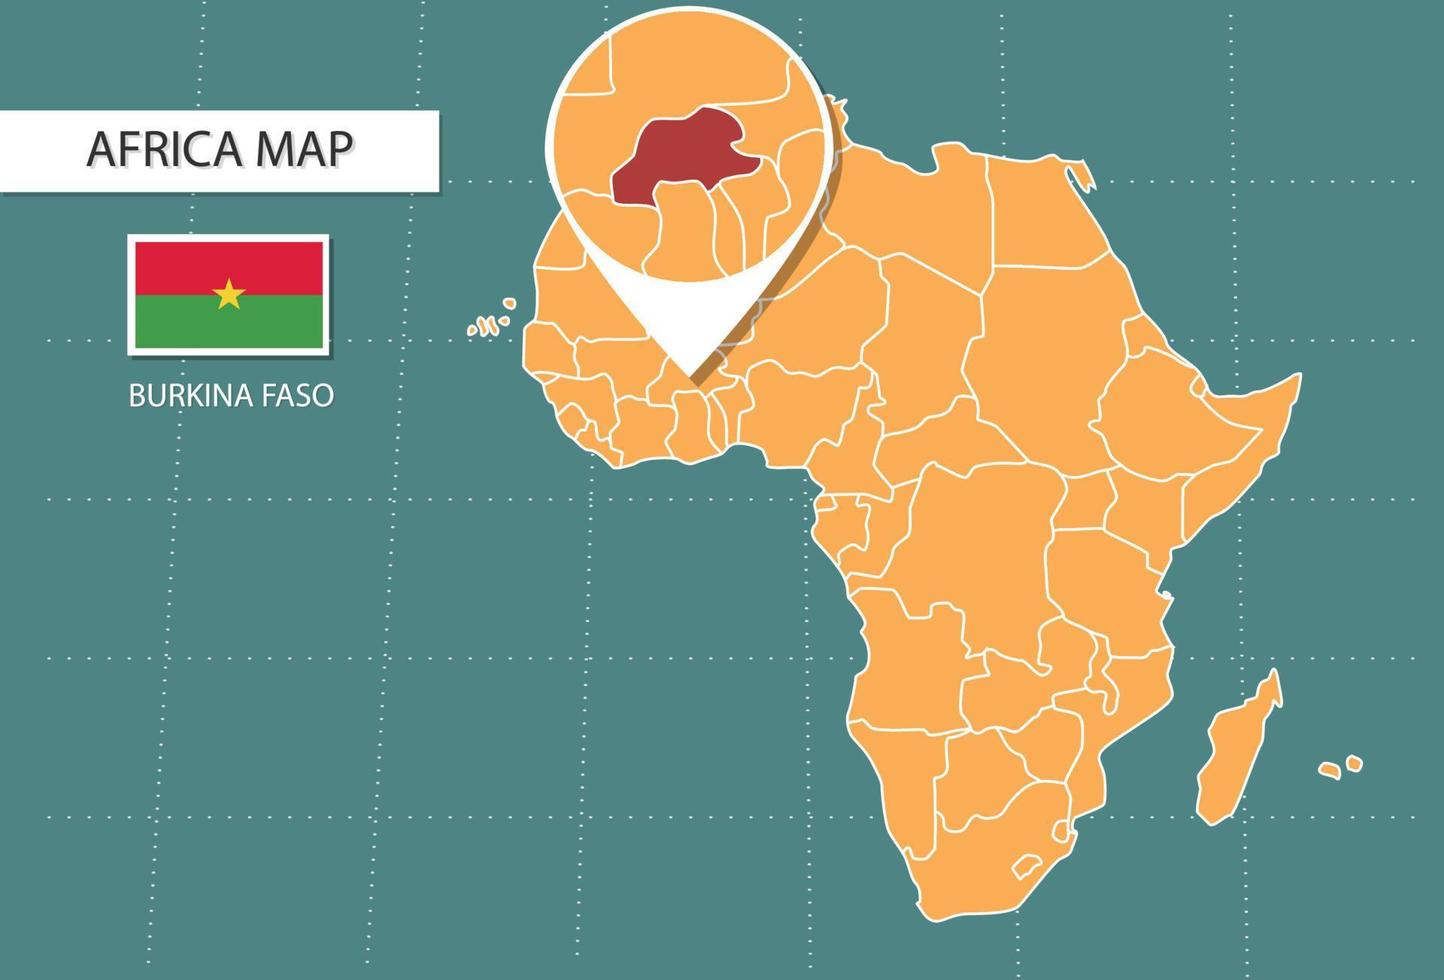 burkina faso karte in afrika zoom version, symbole zeigen burkina faso lage und flaggen. vektor